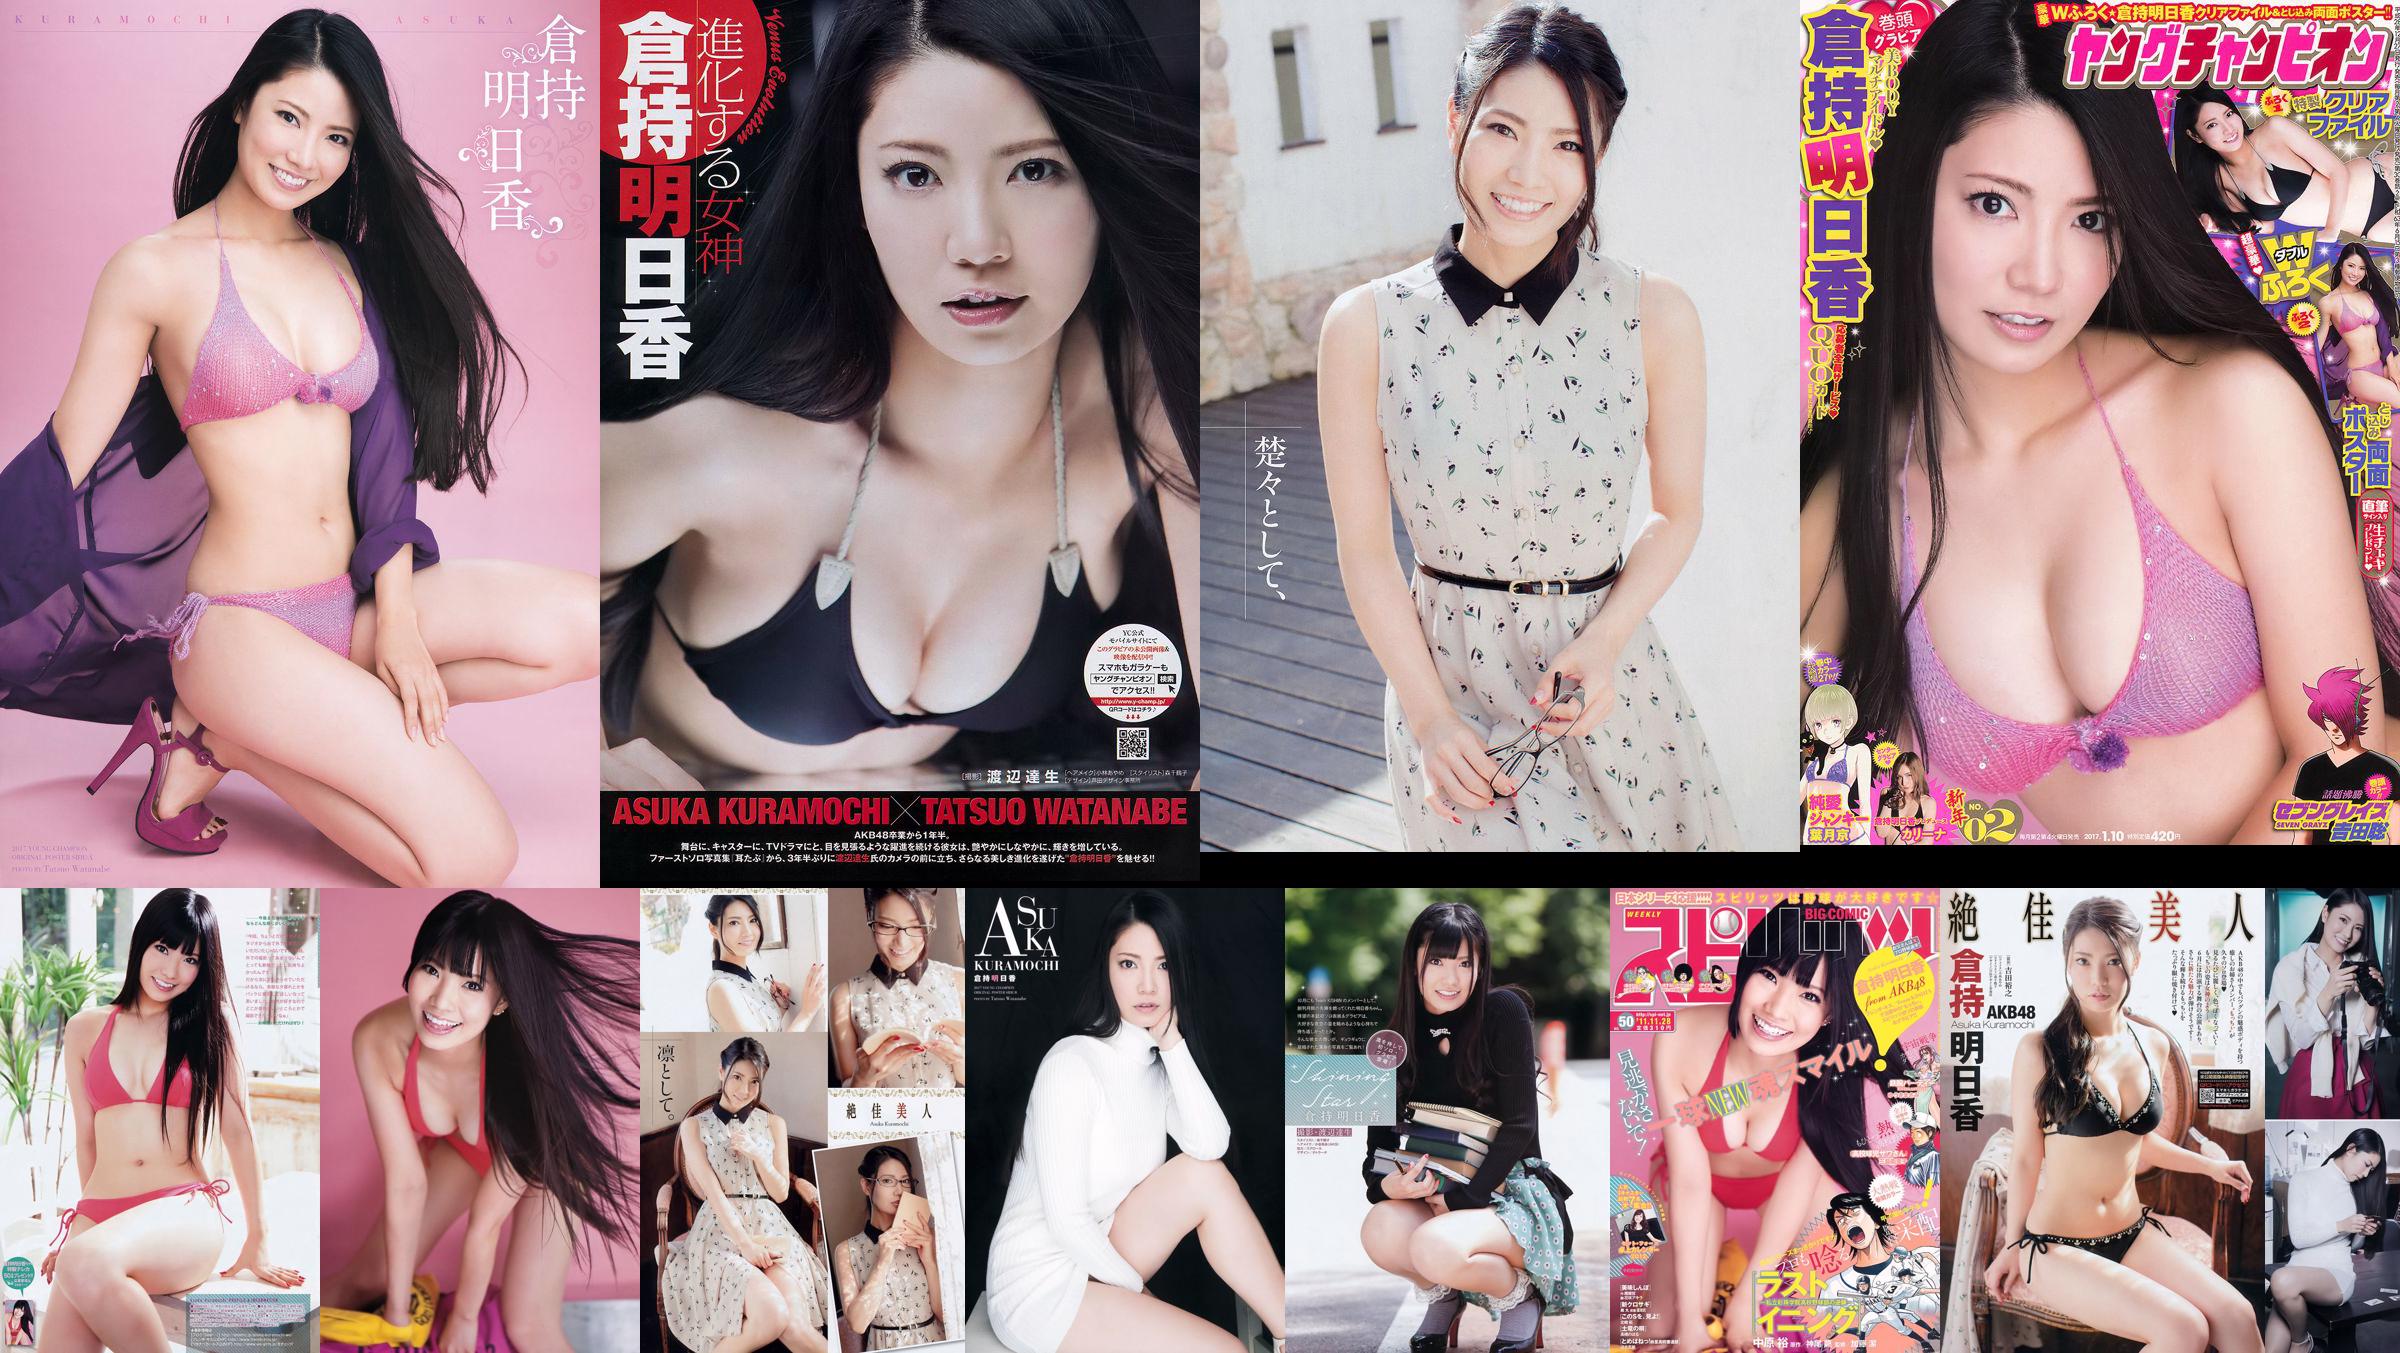 [Young Champion] Asuka Kuramochi 2015 No.09 Photo Magazine No.bedb69 Pagina 7